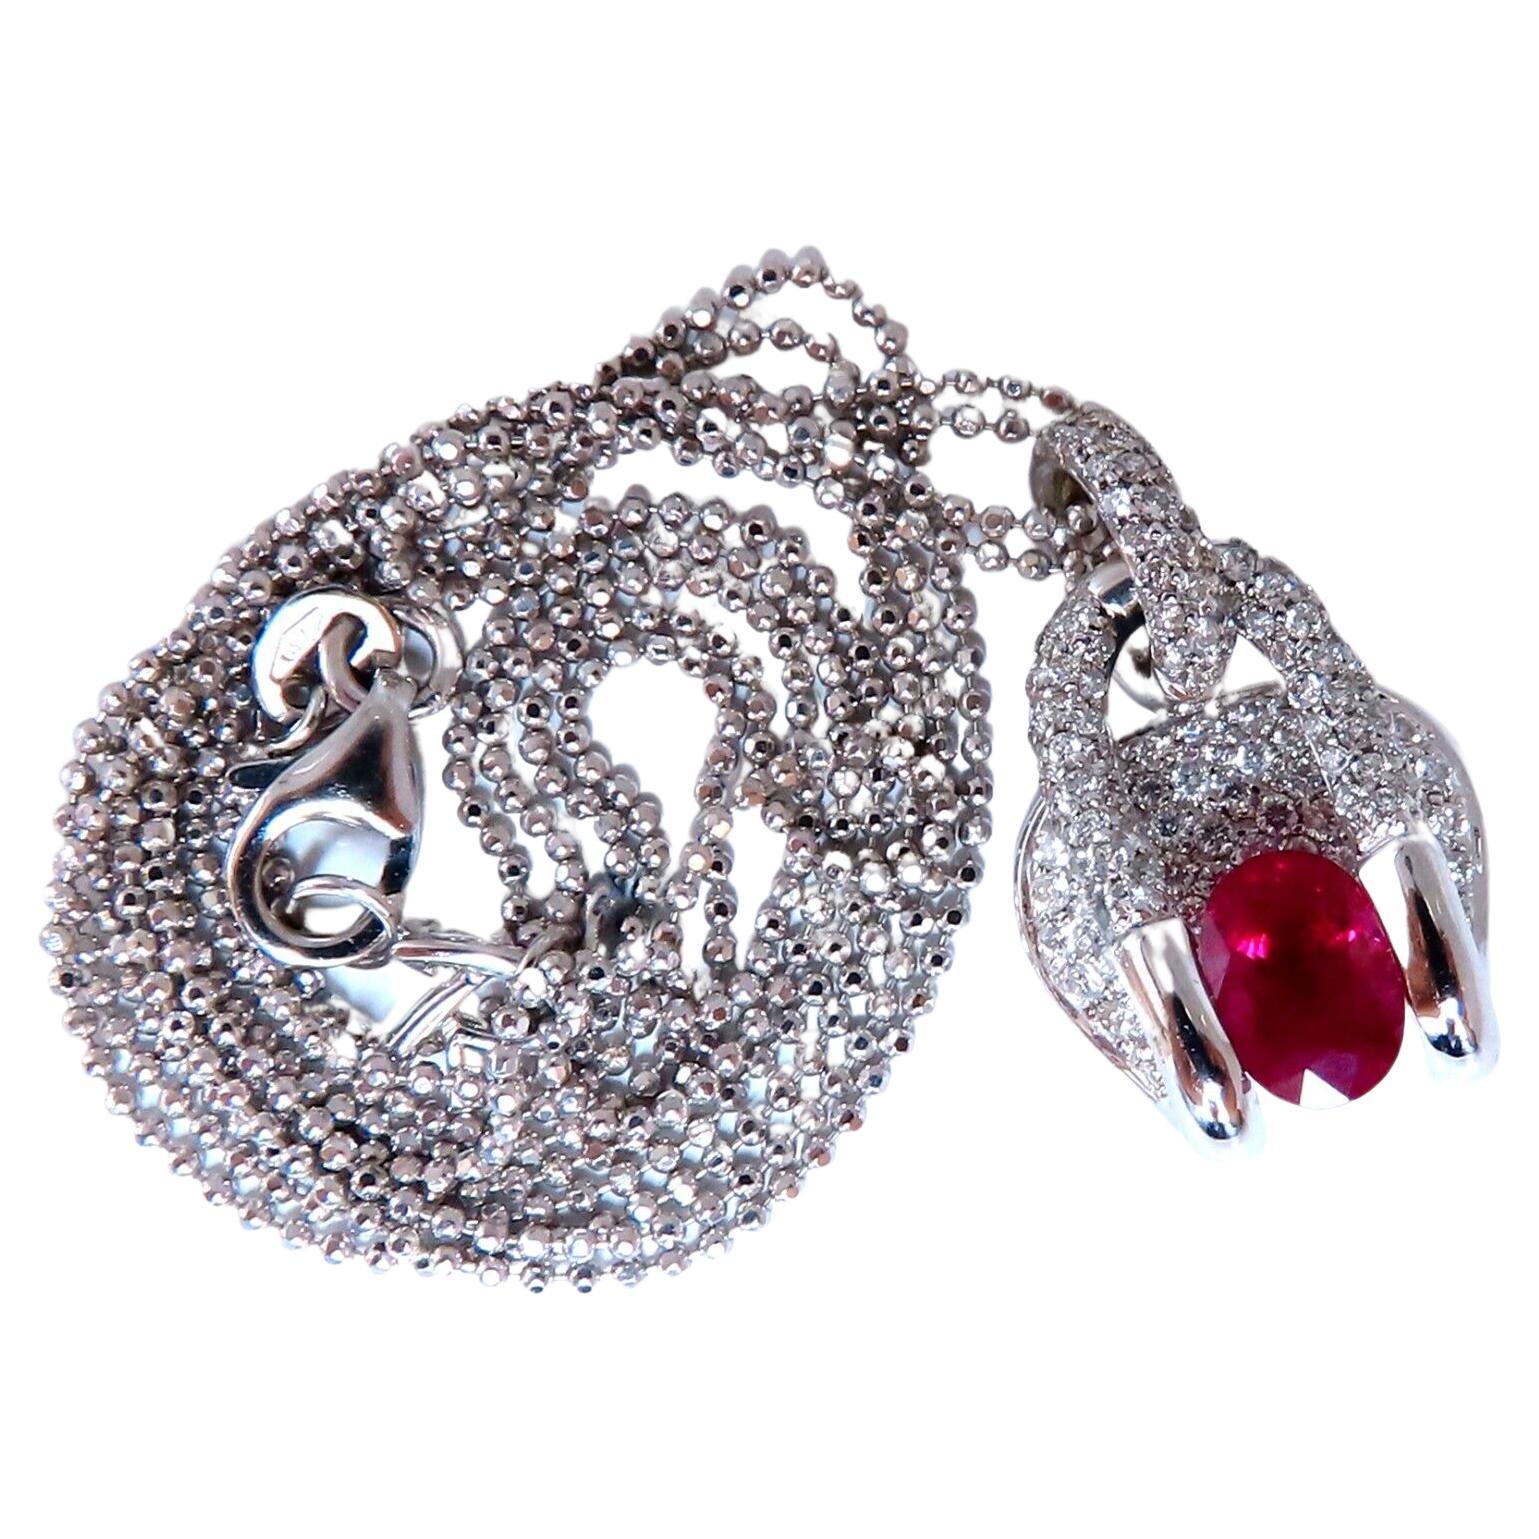 Collier Mod Zen en rubis de Birmanie certifié GIA et diamants, 18 carats